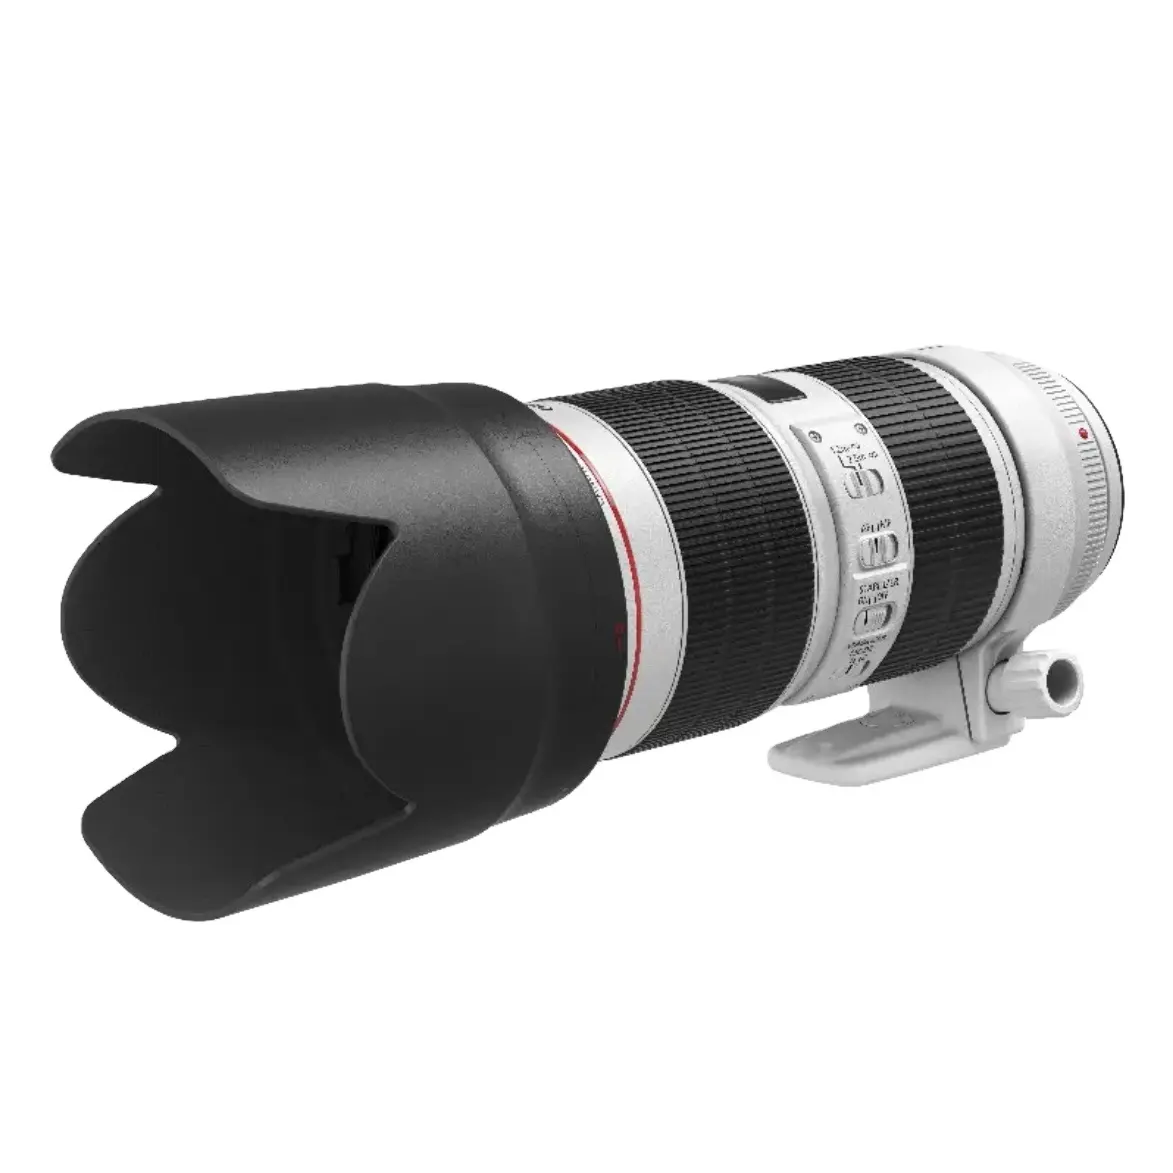 Lente de zoom para cámara digital, teleobjetivo usado, Canon EF 70-200mm f/2.8L IS III USM SLR, gran zoom de tres vías